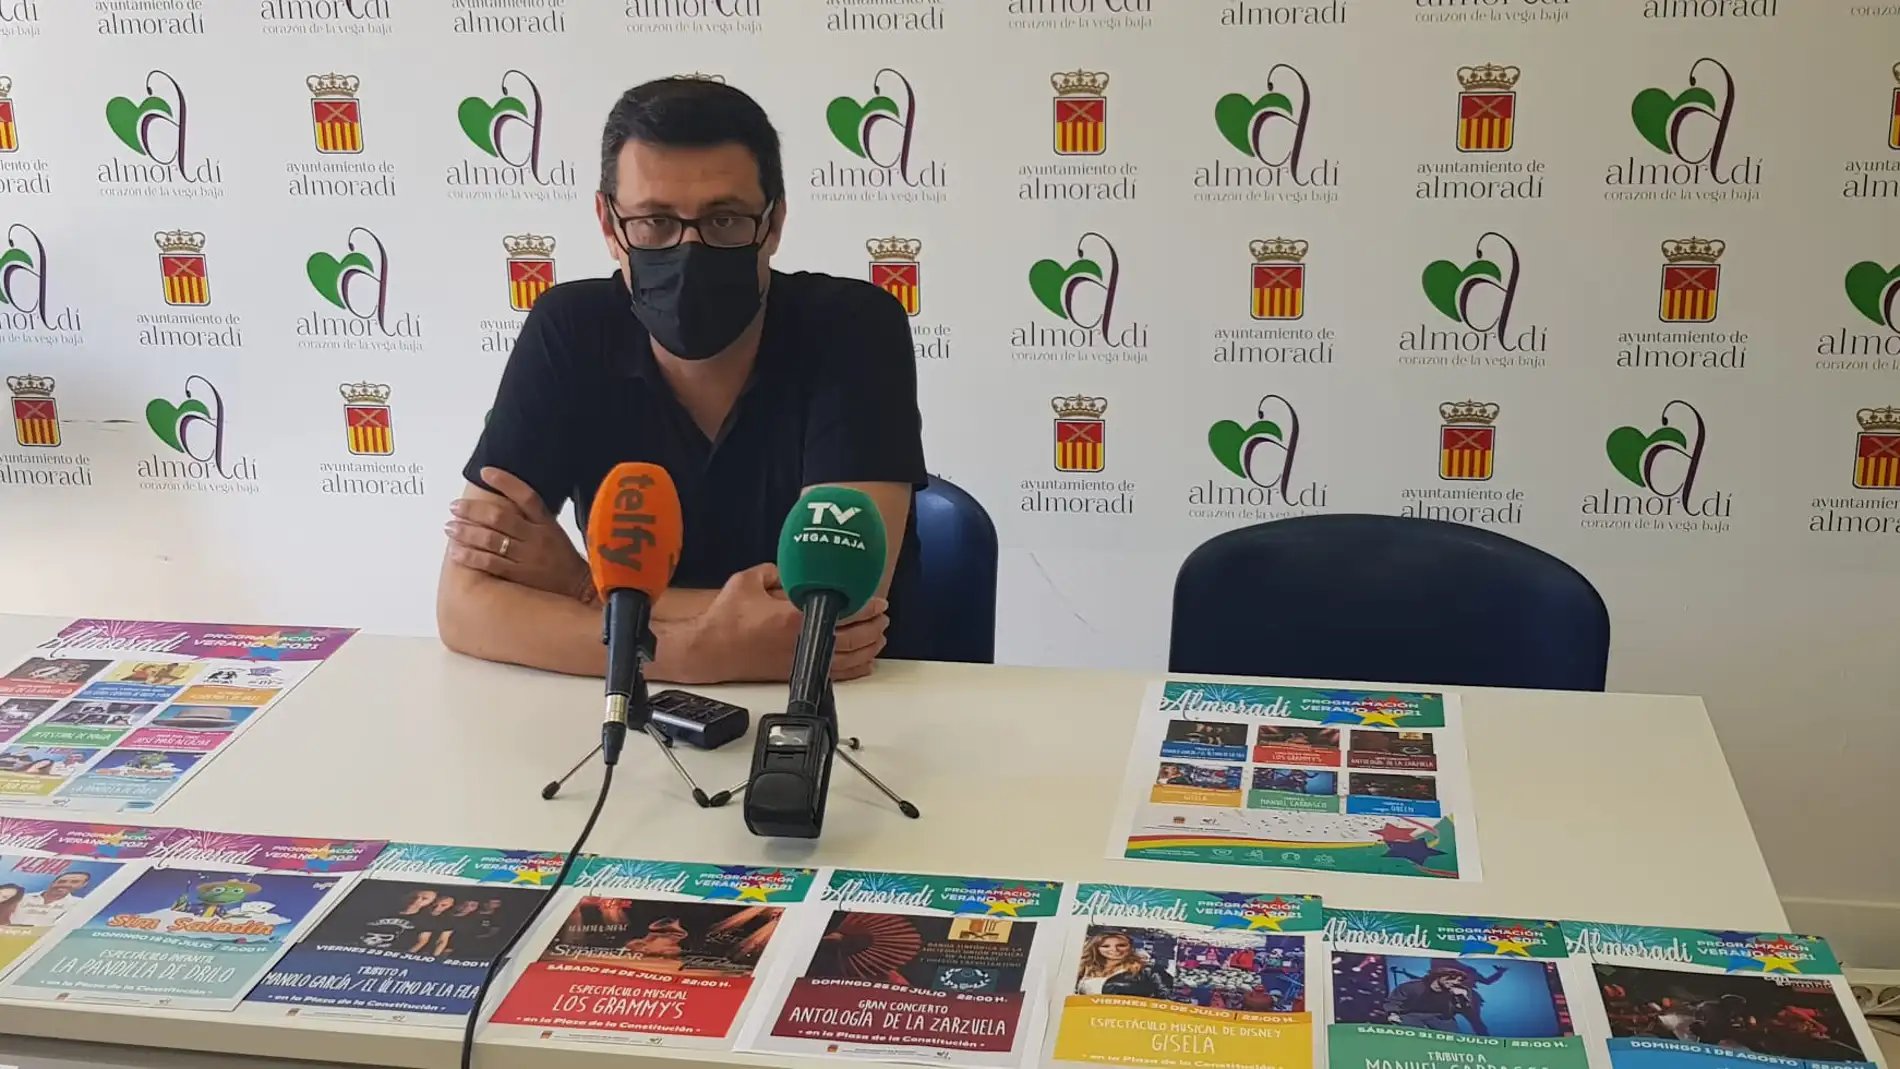 El concejal de fiestas, Domingo Andreu, ha presentado la programación de actos organizada para este mes de julio en Almoradí 